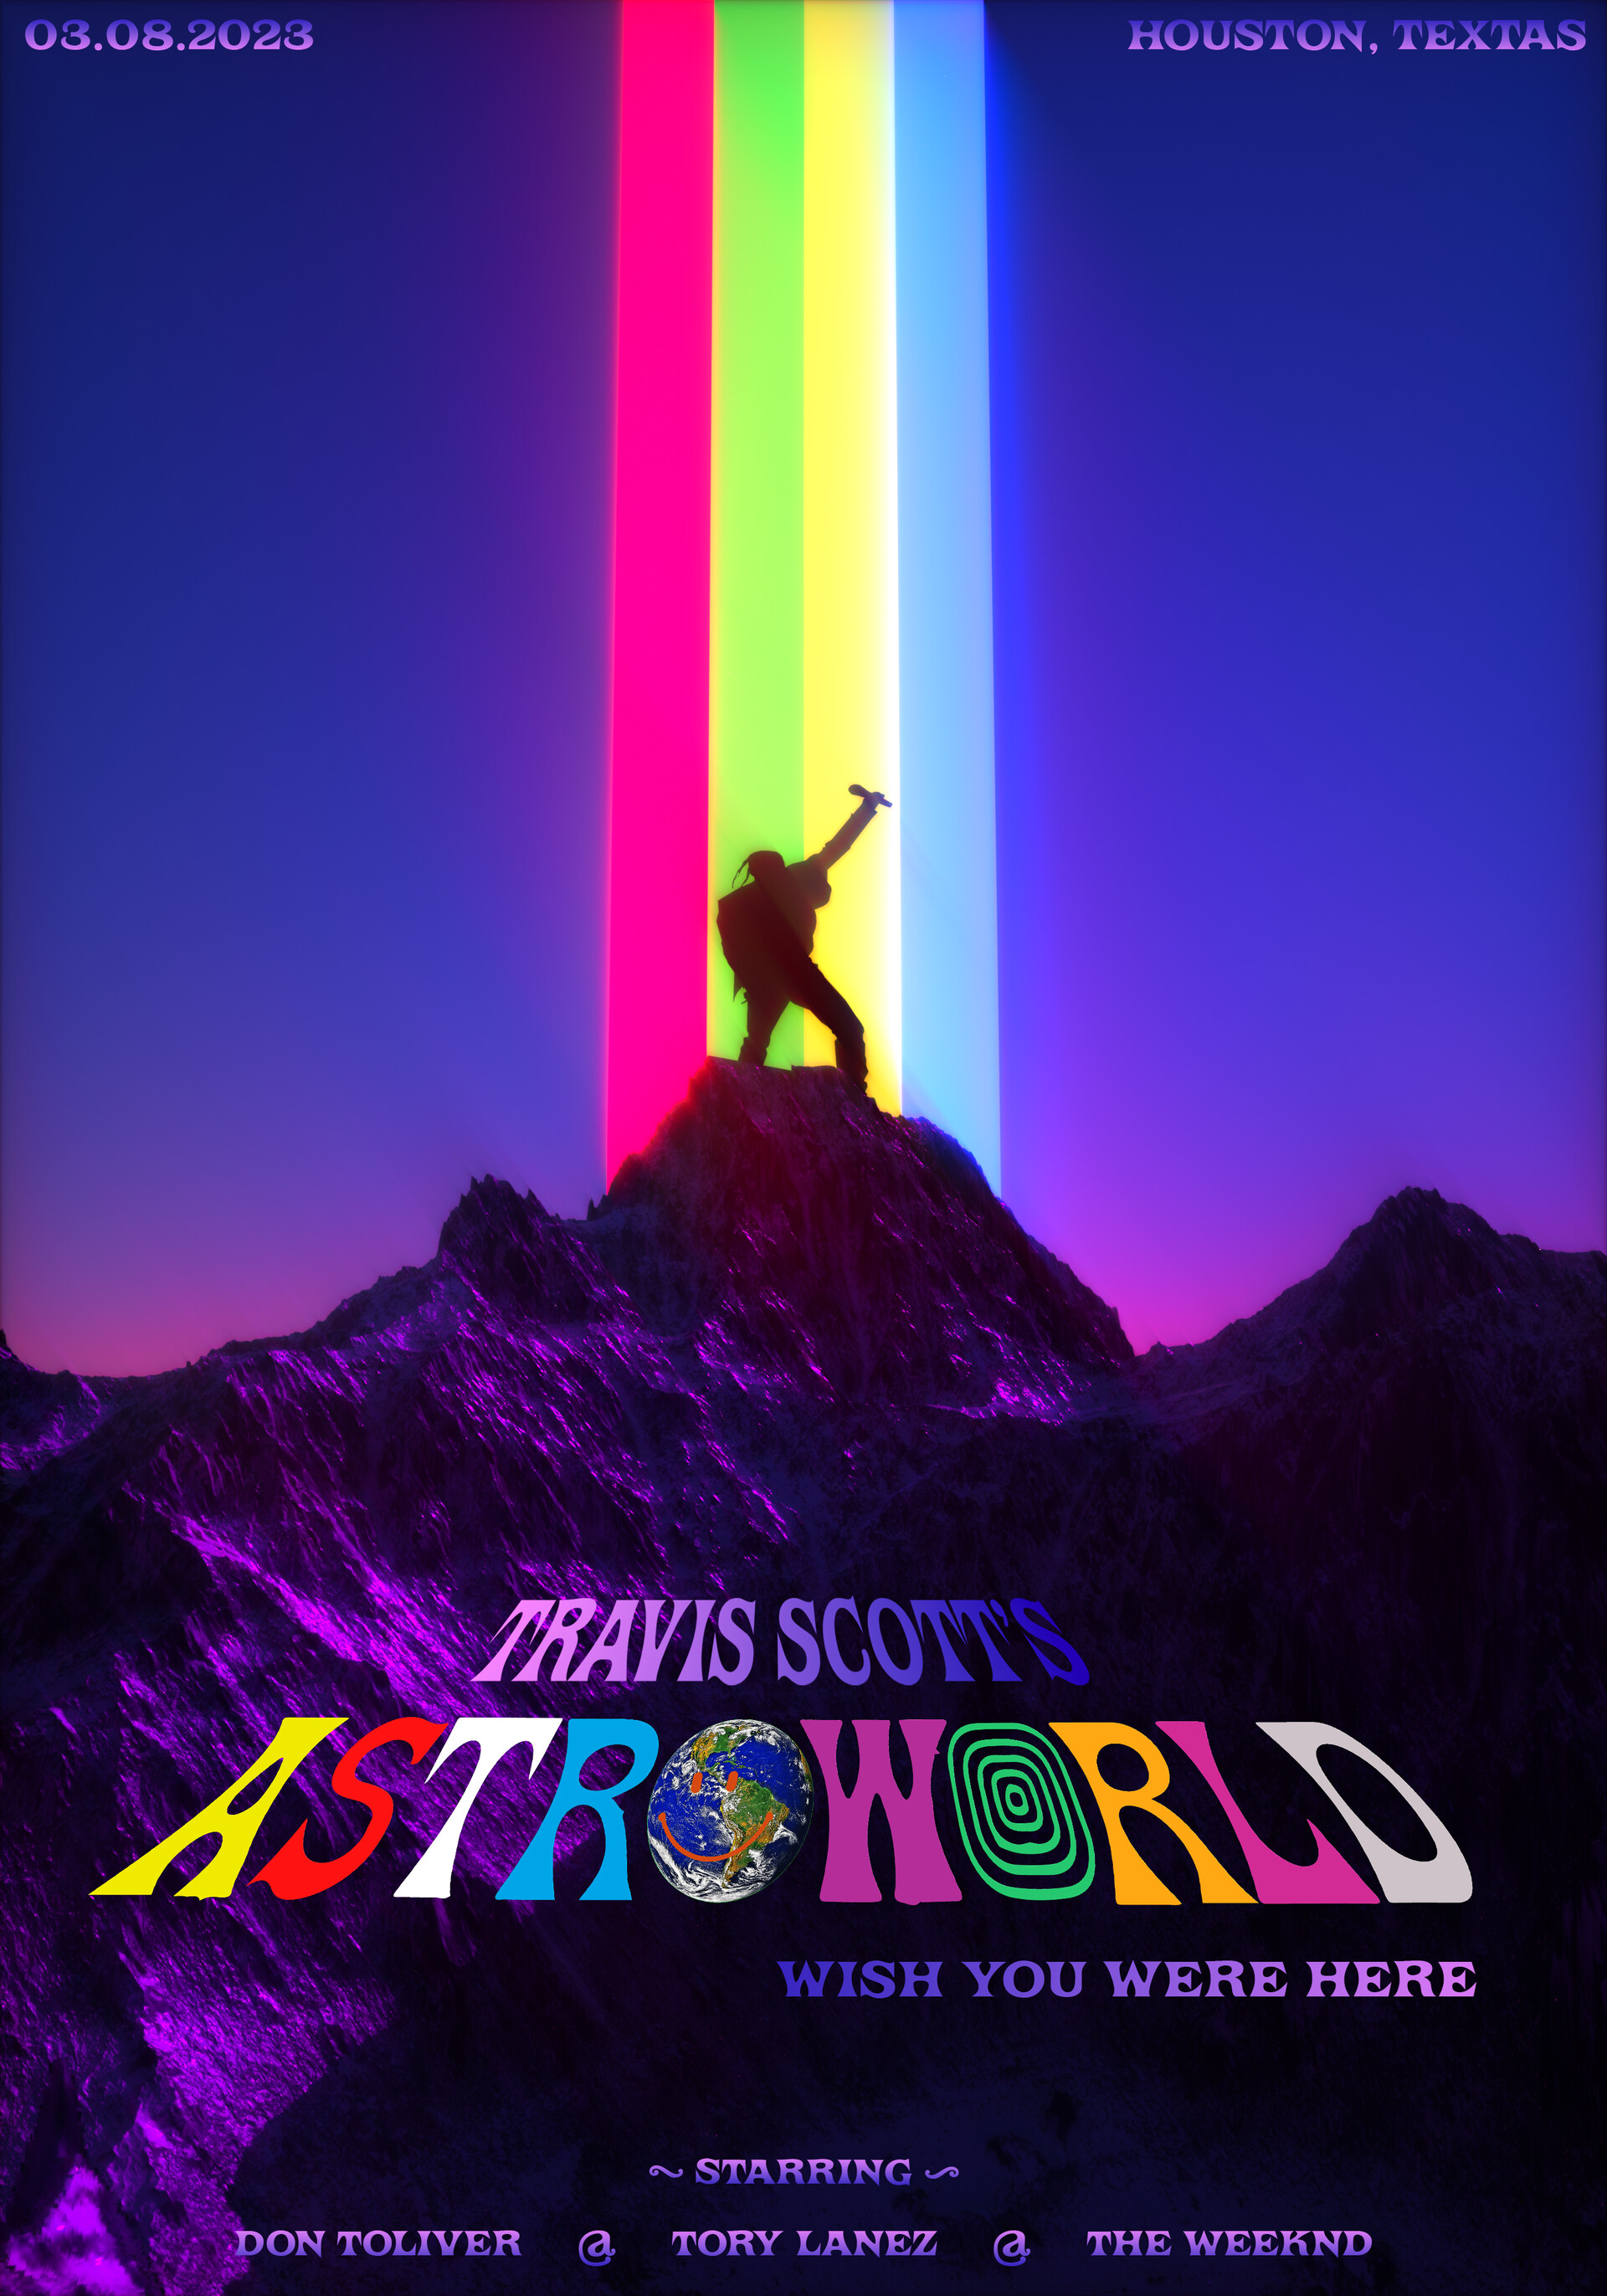 ArtStation - Poster for the Astroworld festival